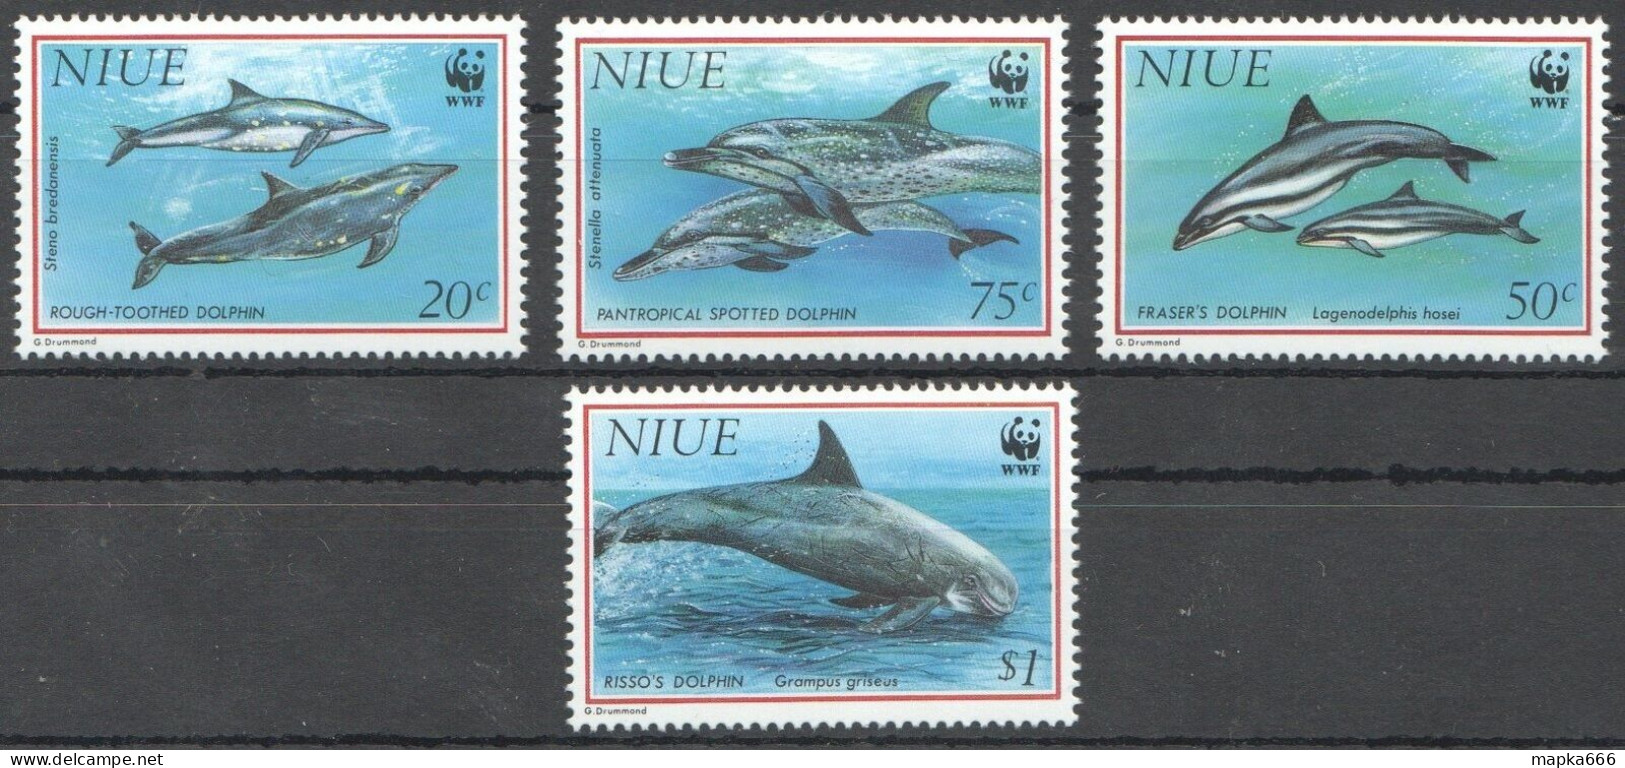 Ft124 1993 Niue Wwf Dolphins Fish & Marine Life #822-25 Michel 16 Euro 1Set Mnh - Marine Life